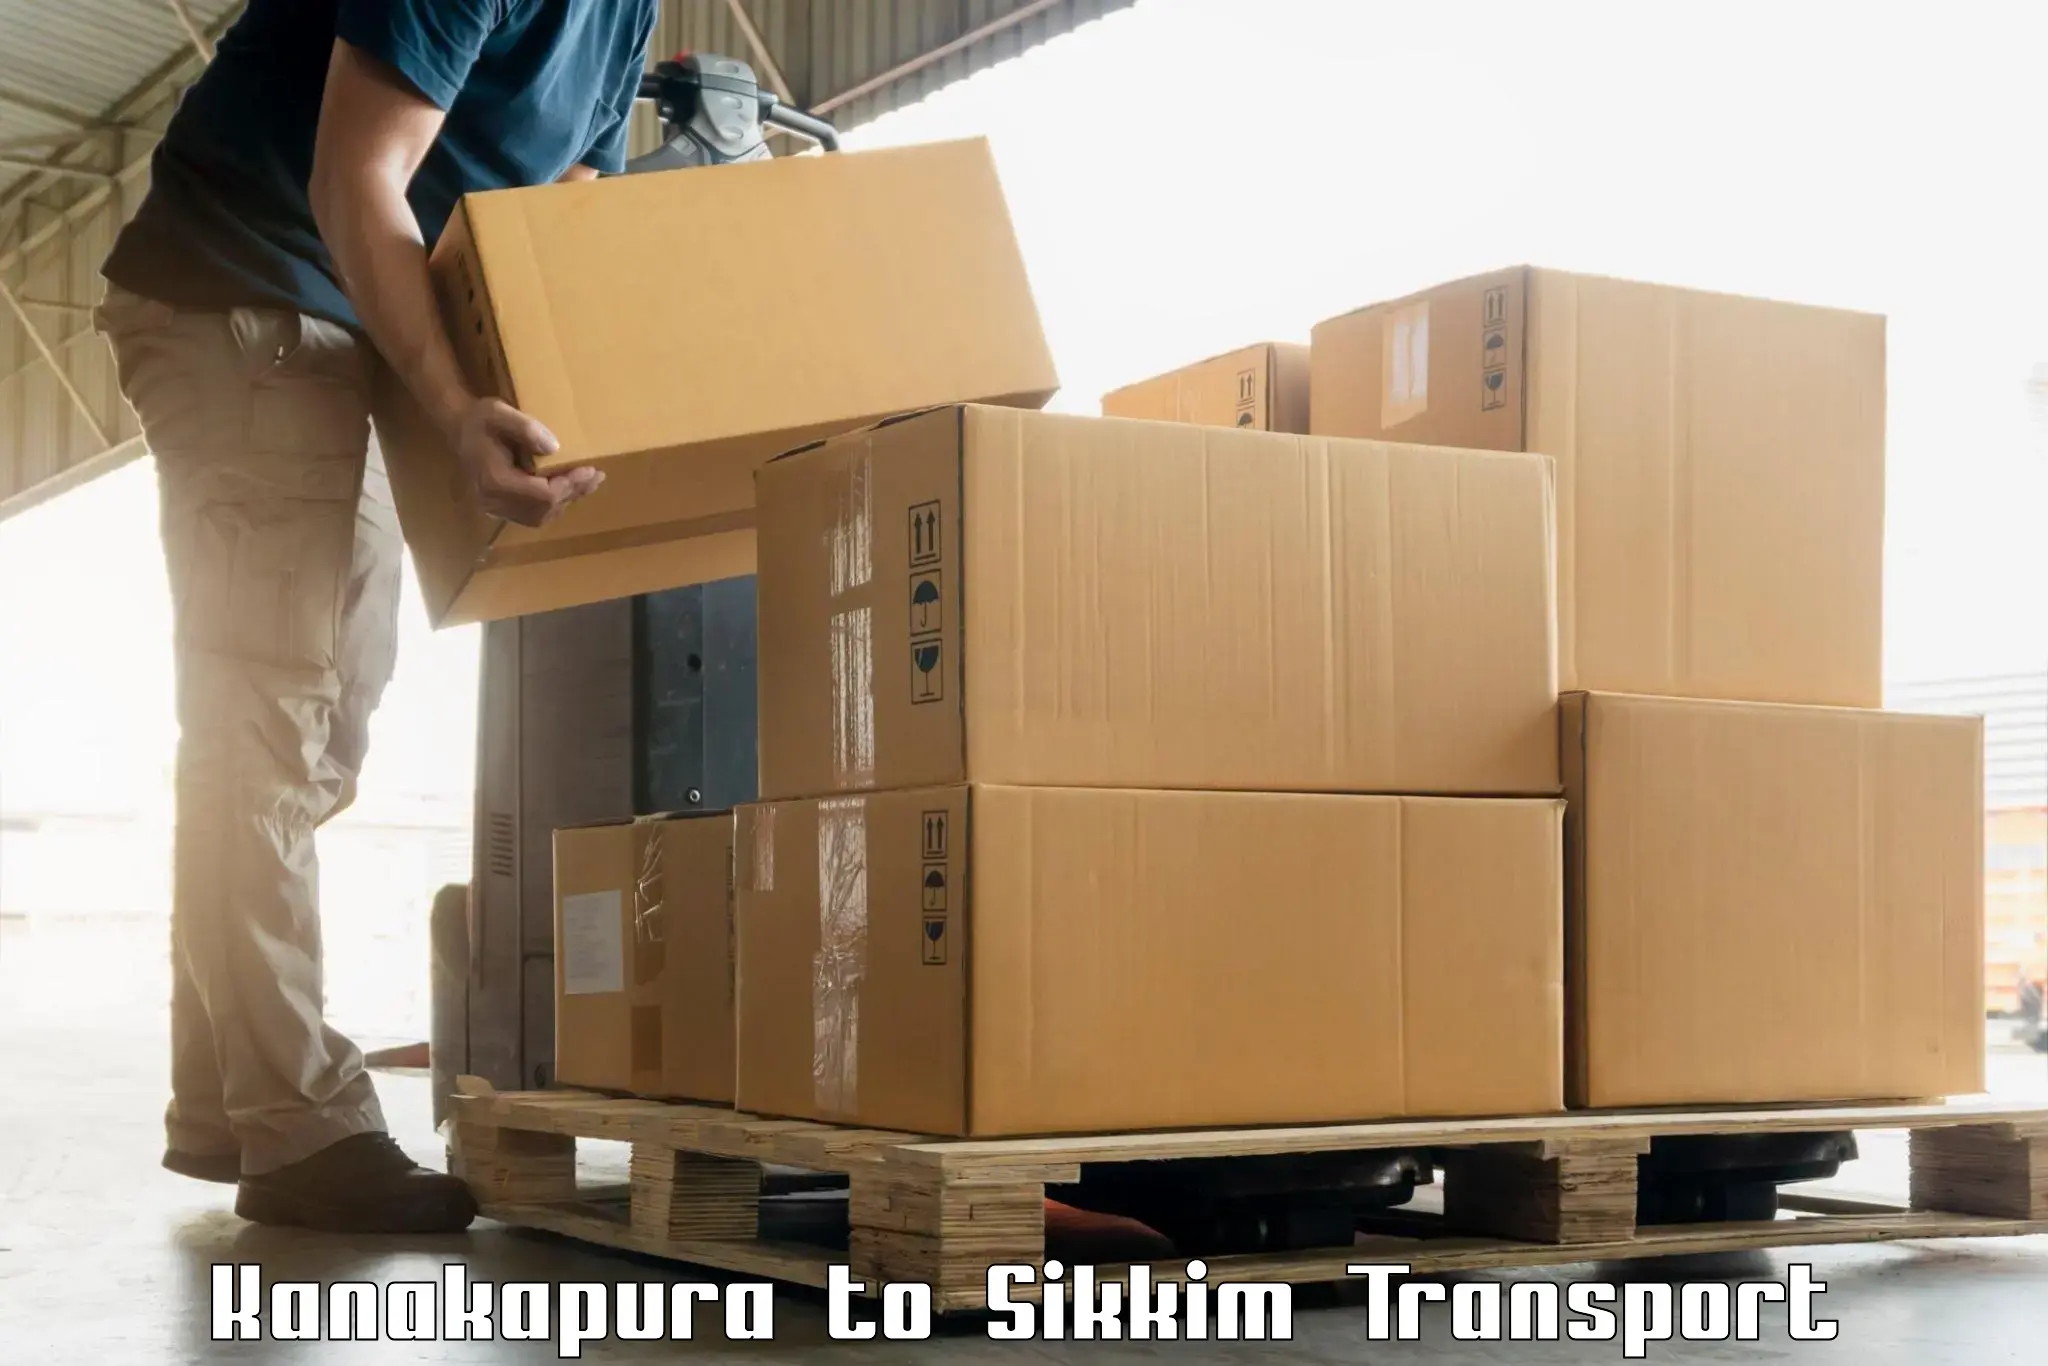 Sending bike to another city Kanakapura to East Sikkim